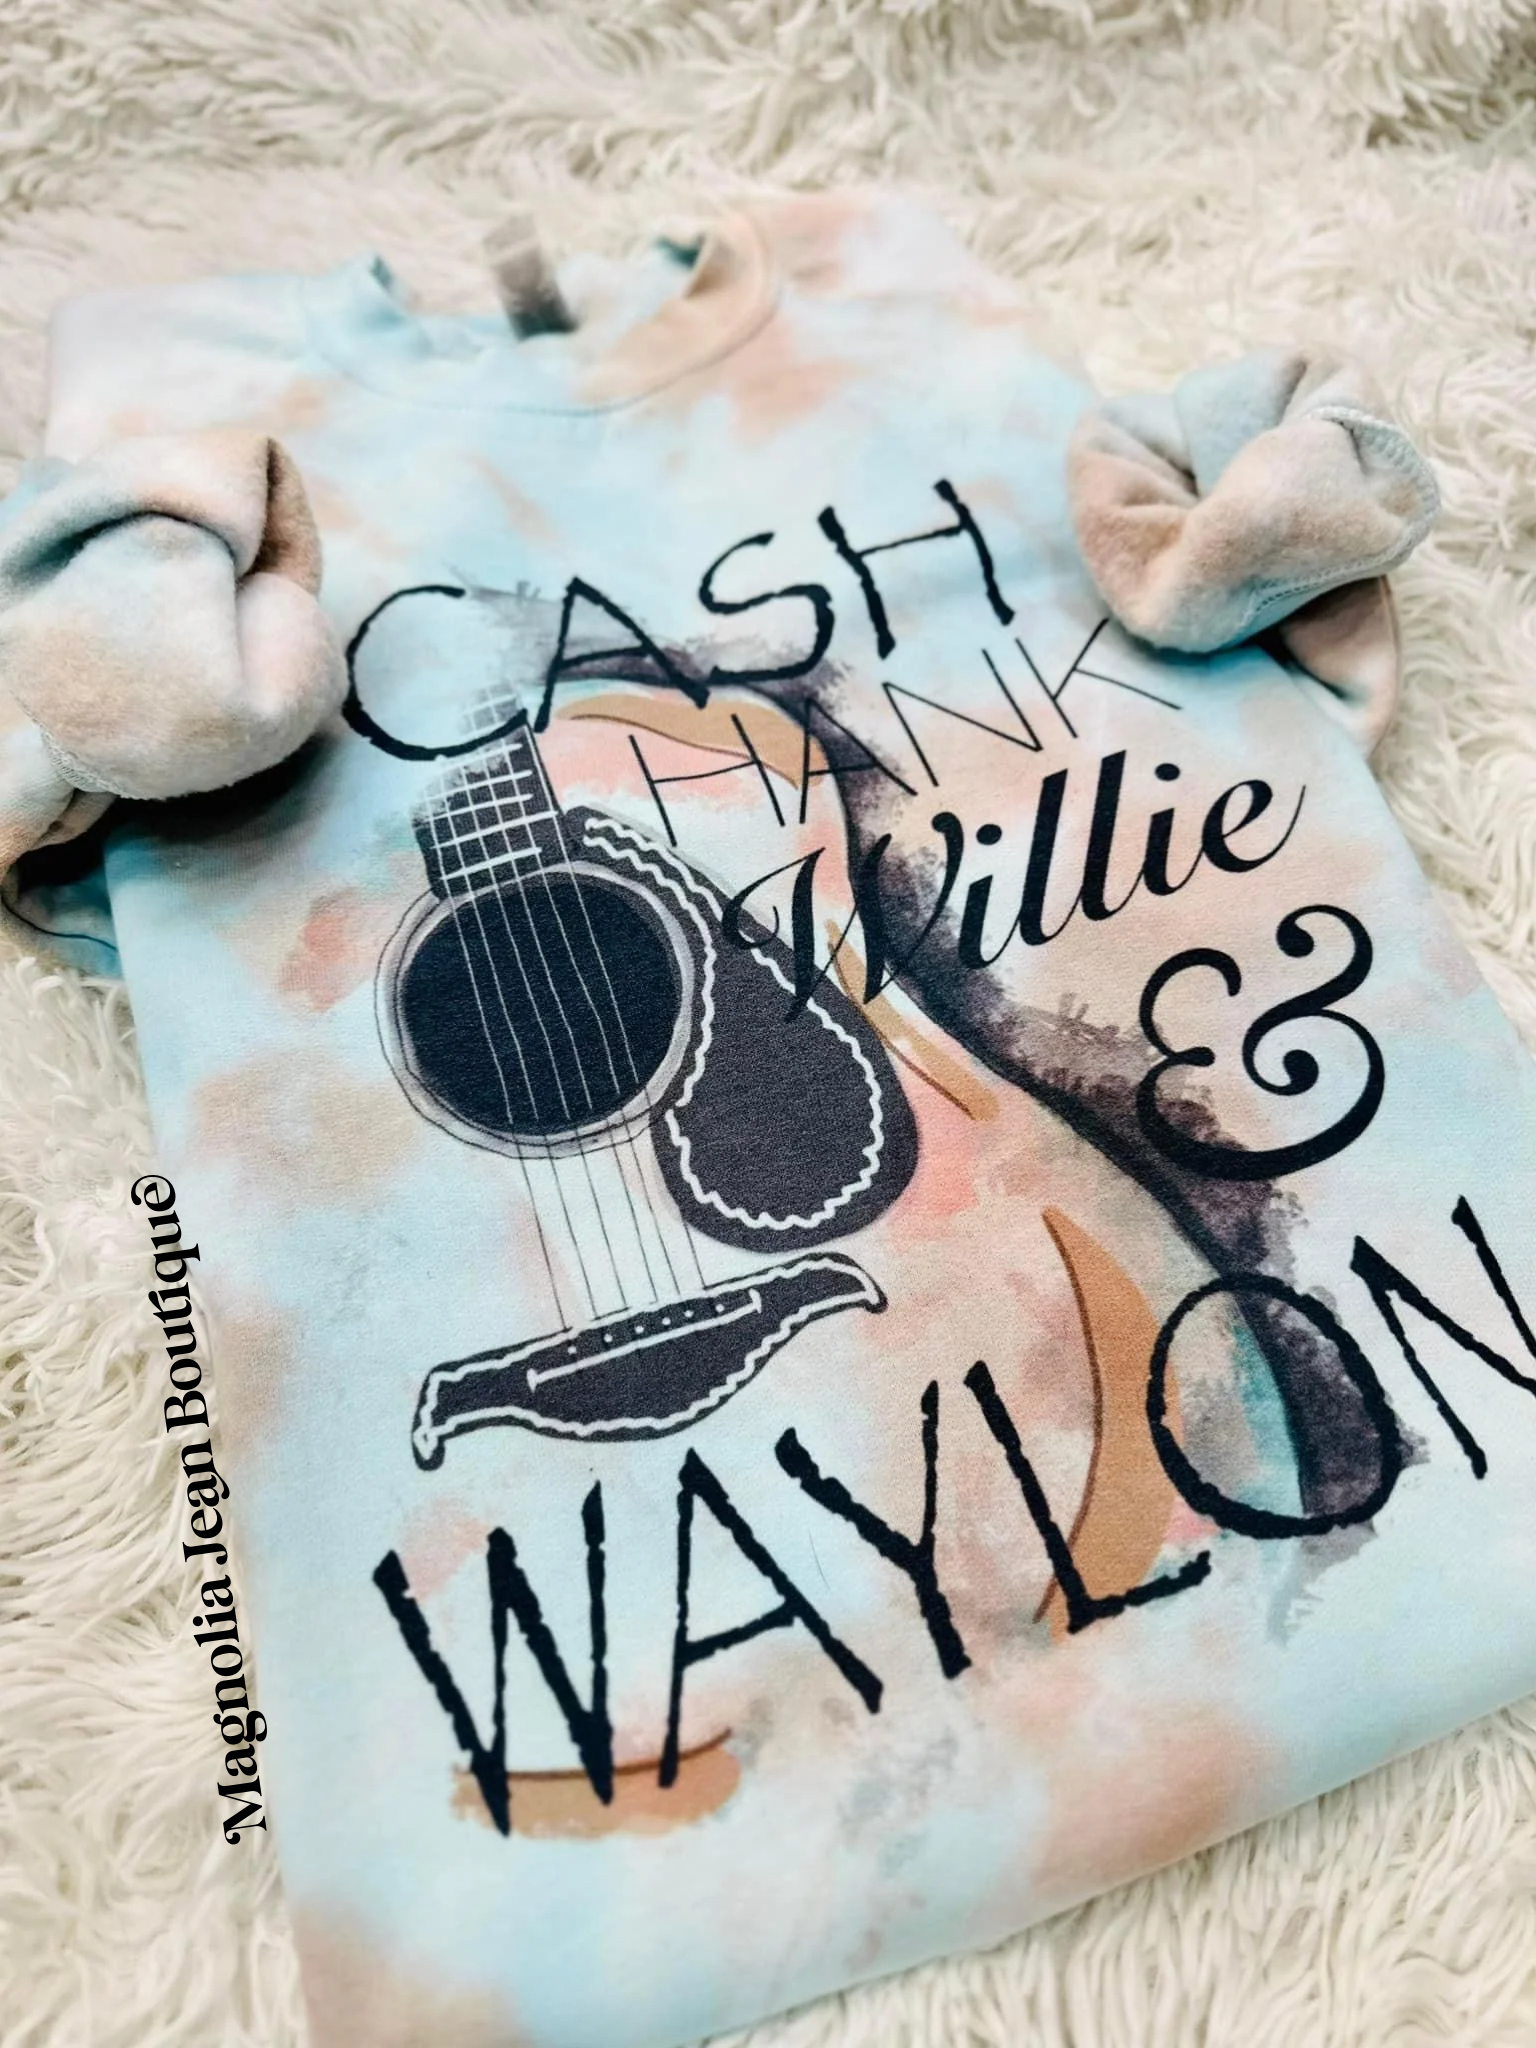 Cash Willie & Waylon Special Order Sweatshirt